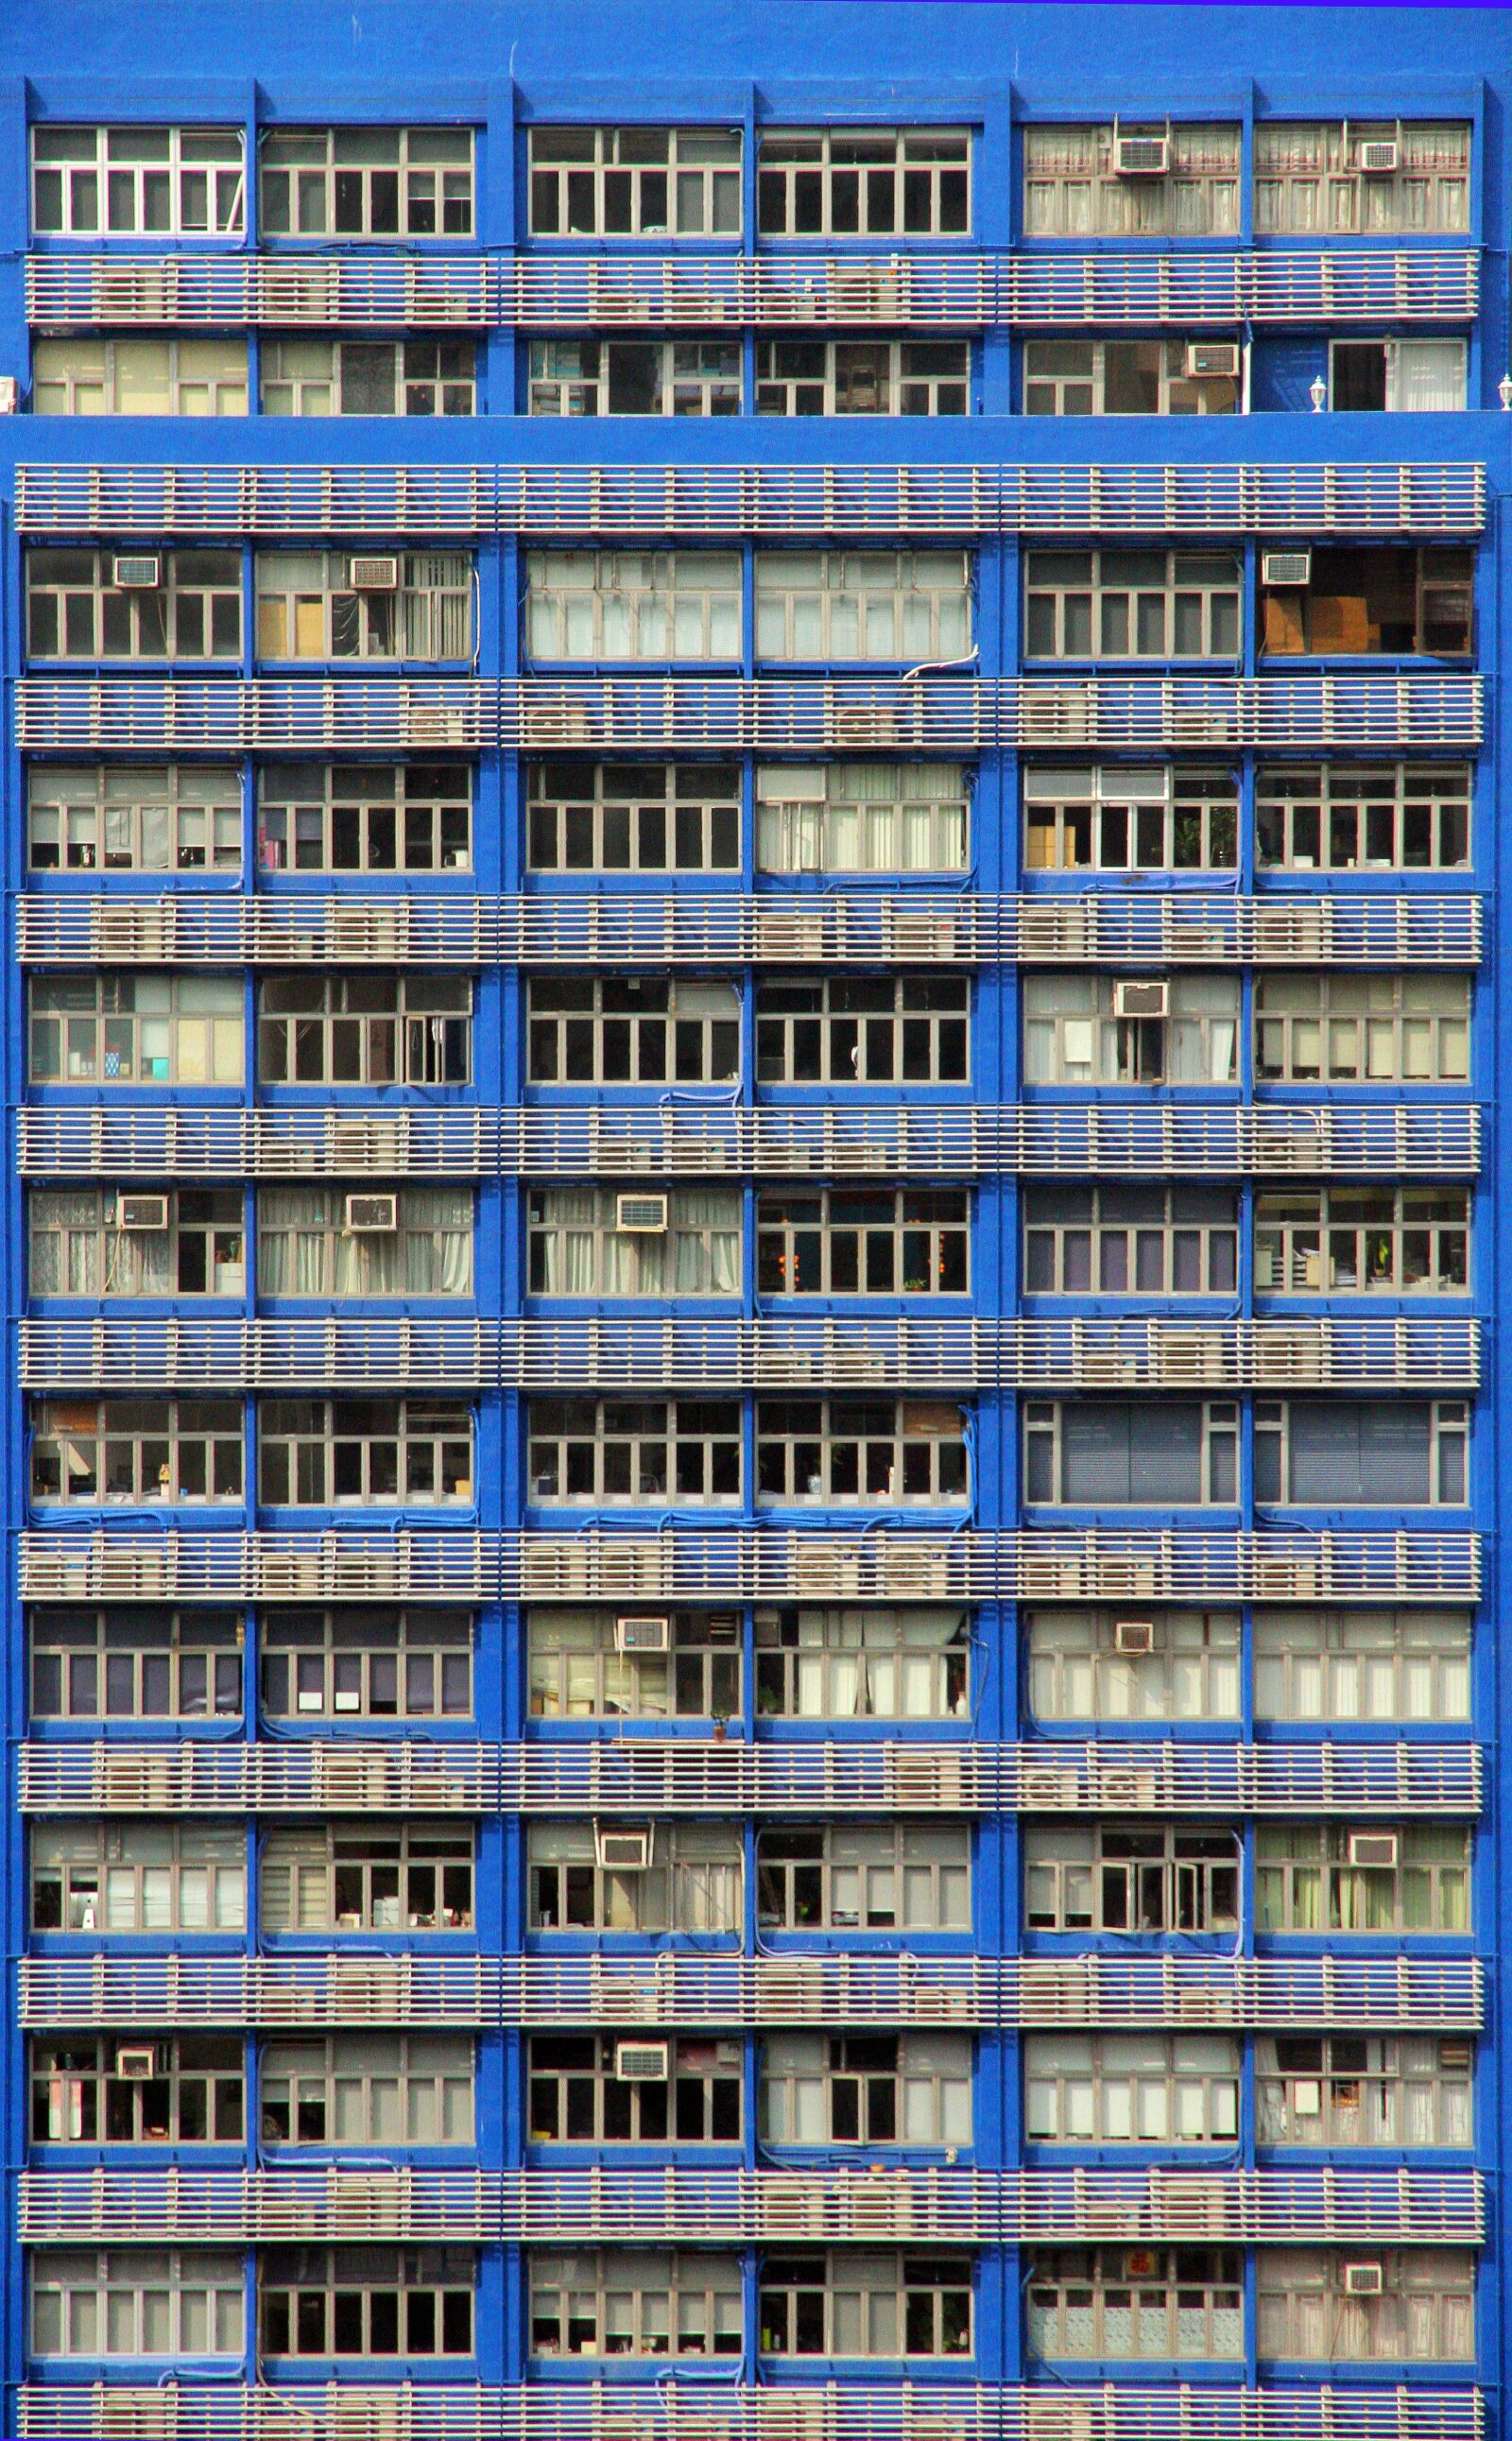 Canon EOS 7D sample photo. Balconies, condos, blue photography